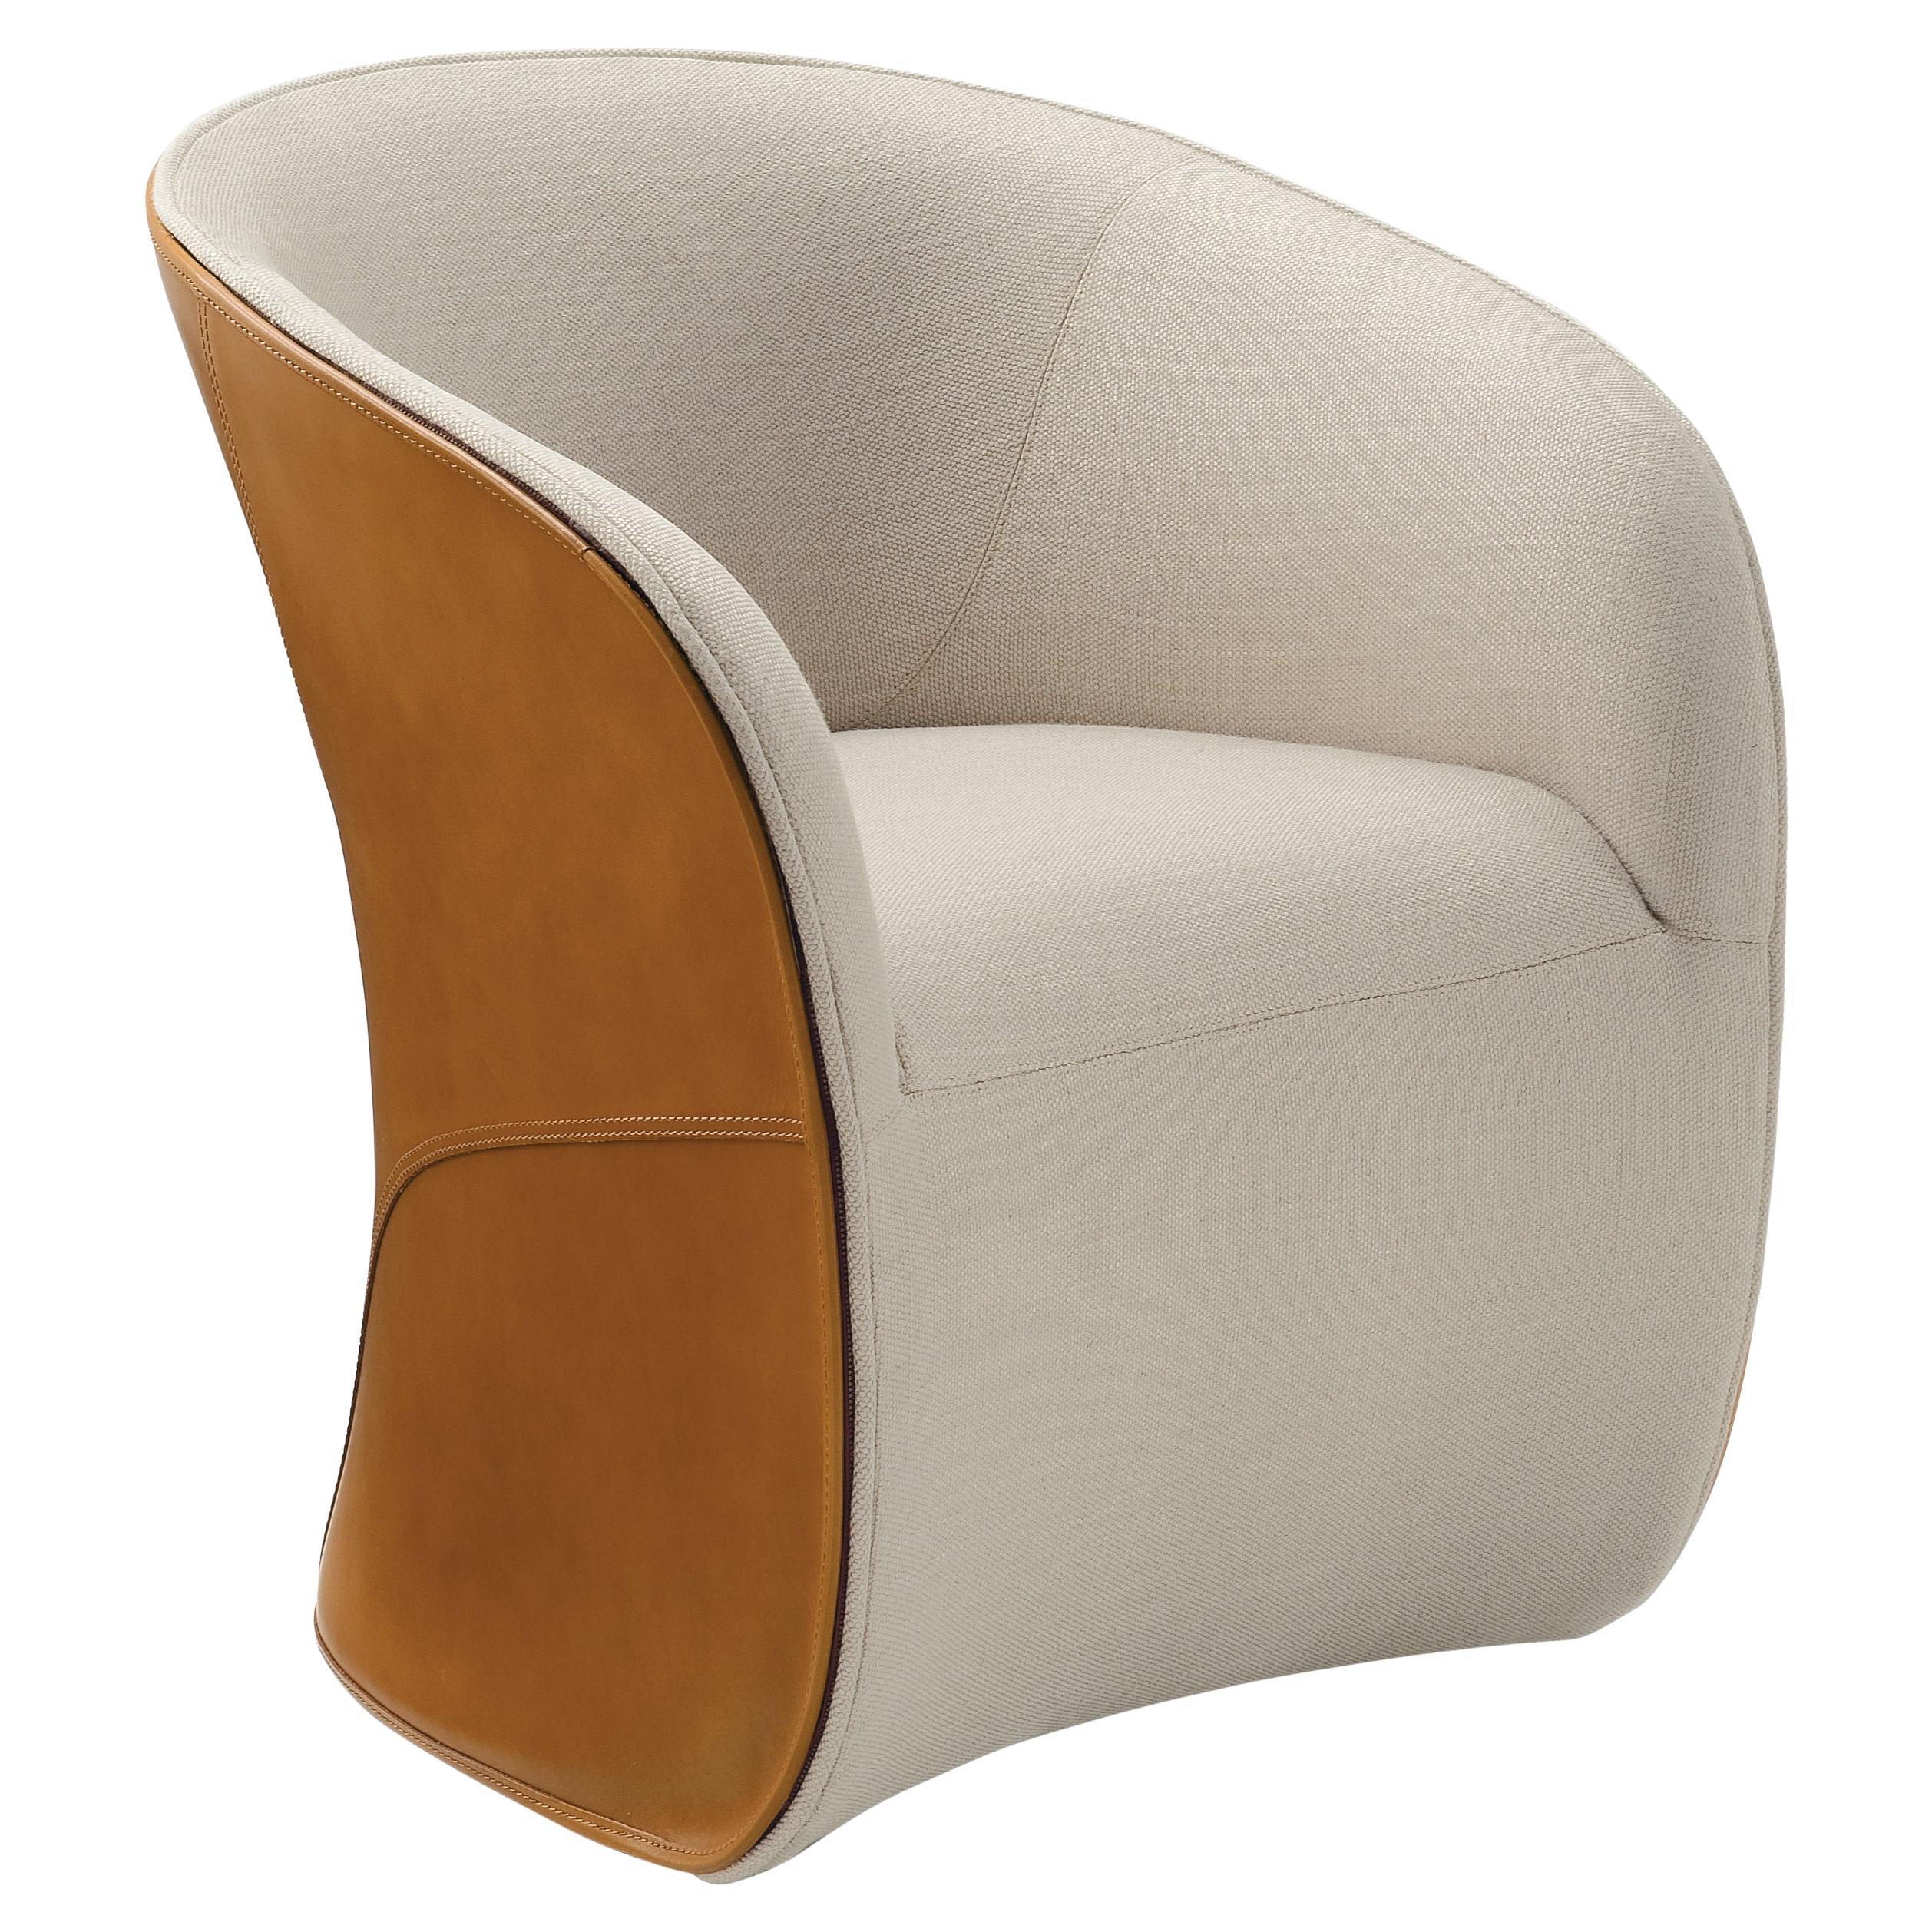 Customizable Zanotta Calla Chair Designed by Noé Duchaufour Lawrance